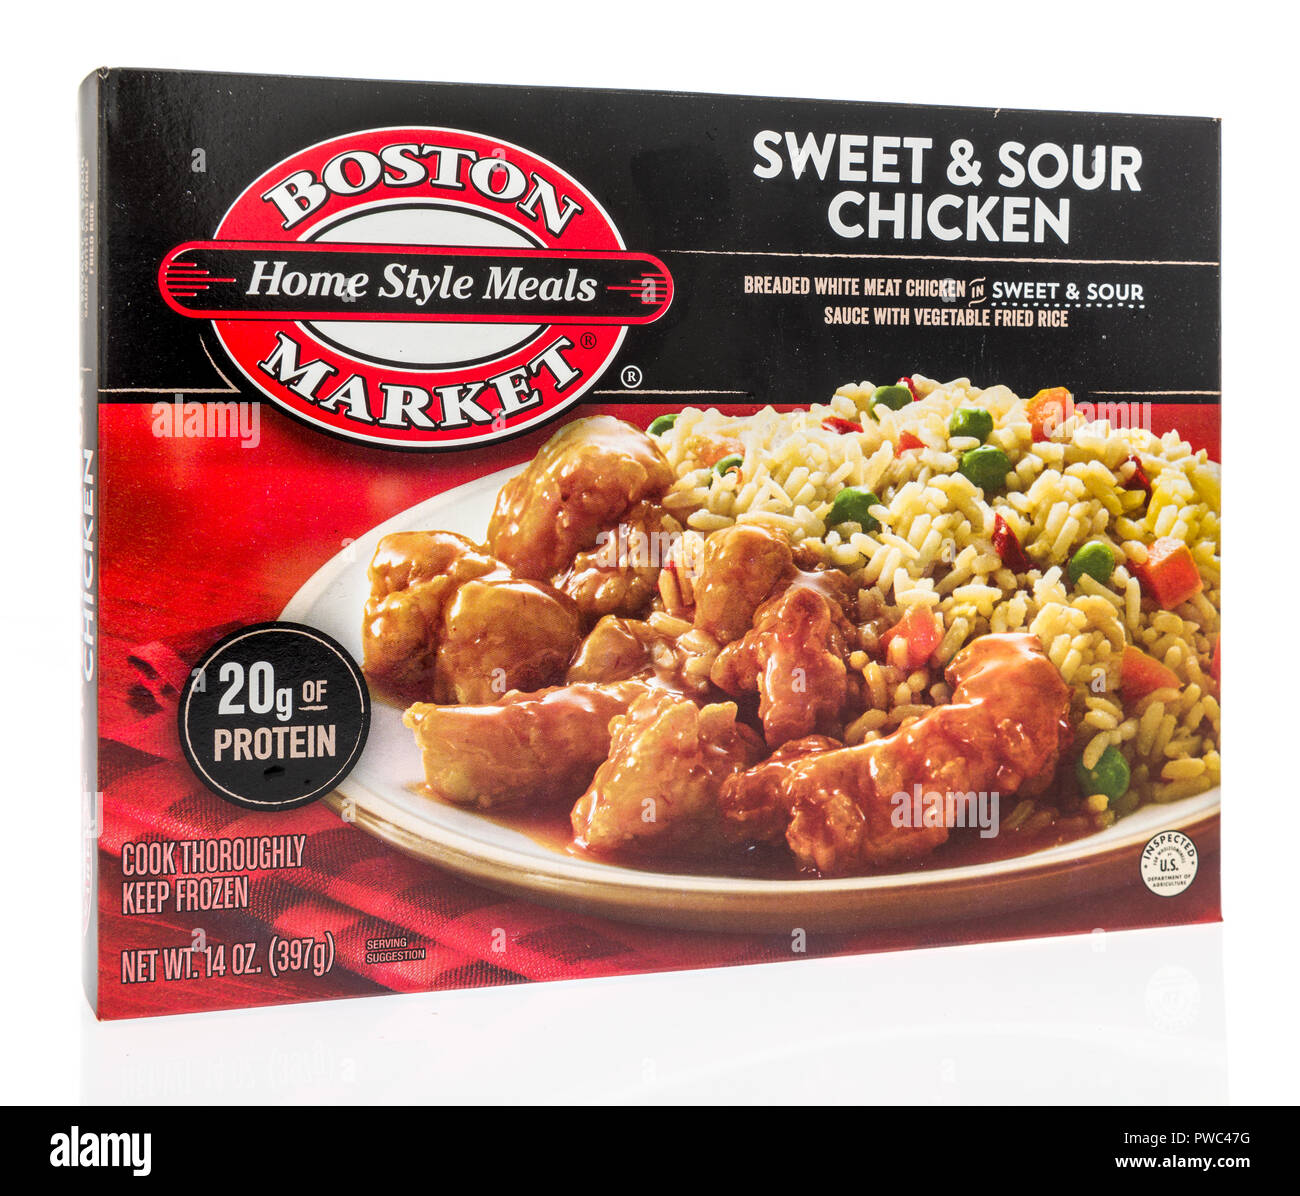 Winneconne, WI - 29 septembre 2018 : une boîte de Boston Market accueil repas de style en poulet aigre-doux sur un fond isolé Banque D'Images